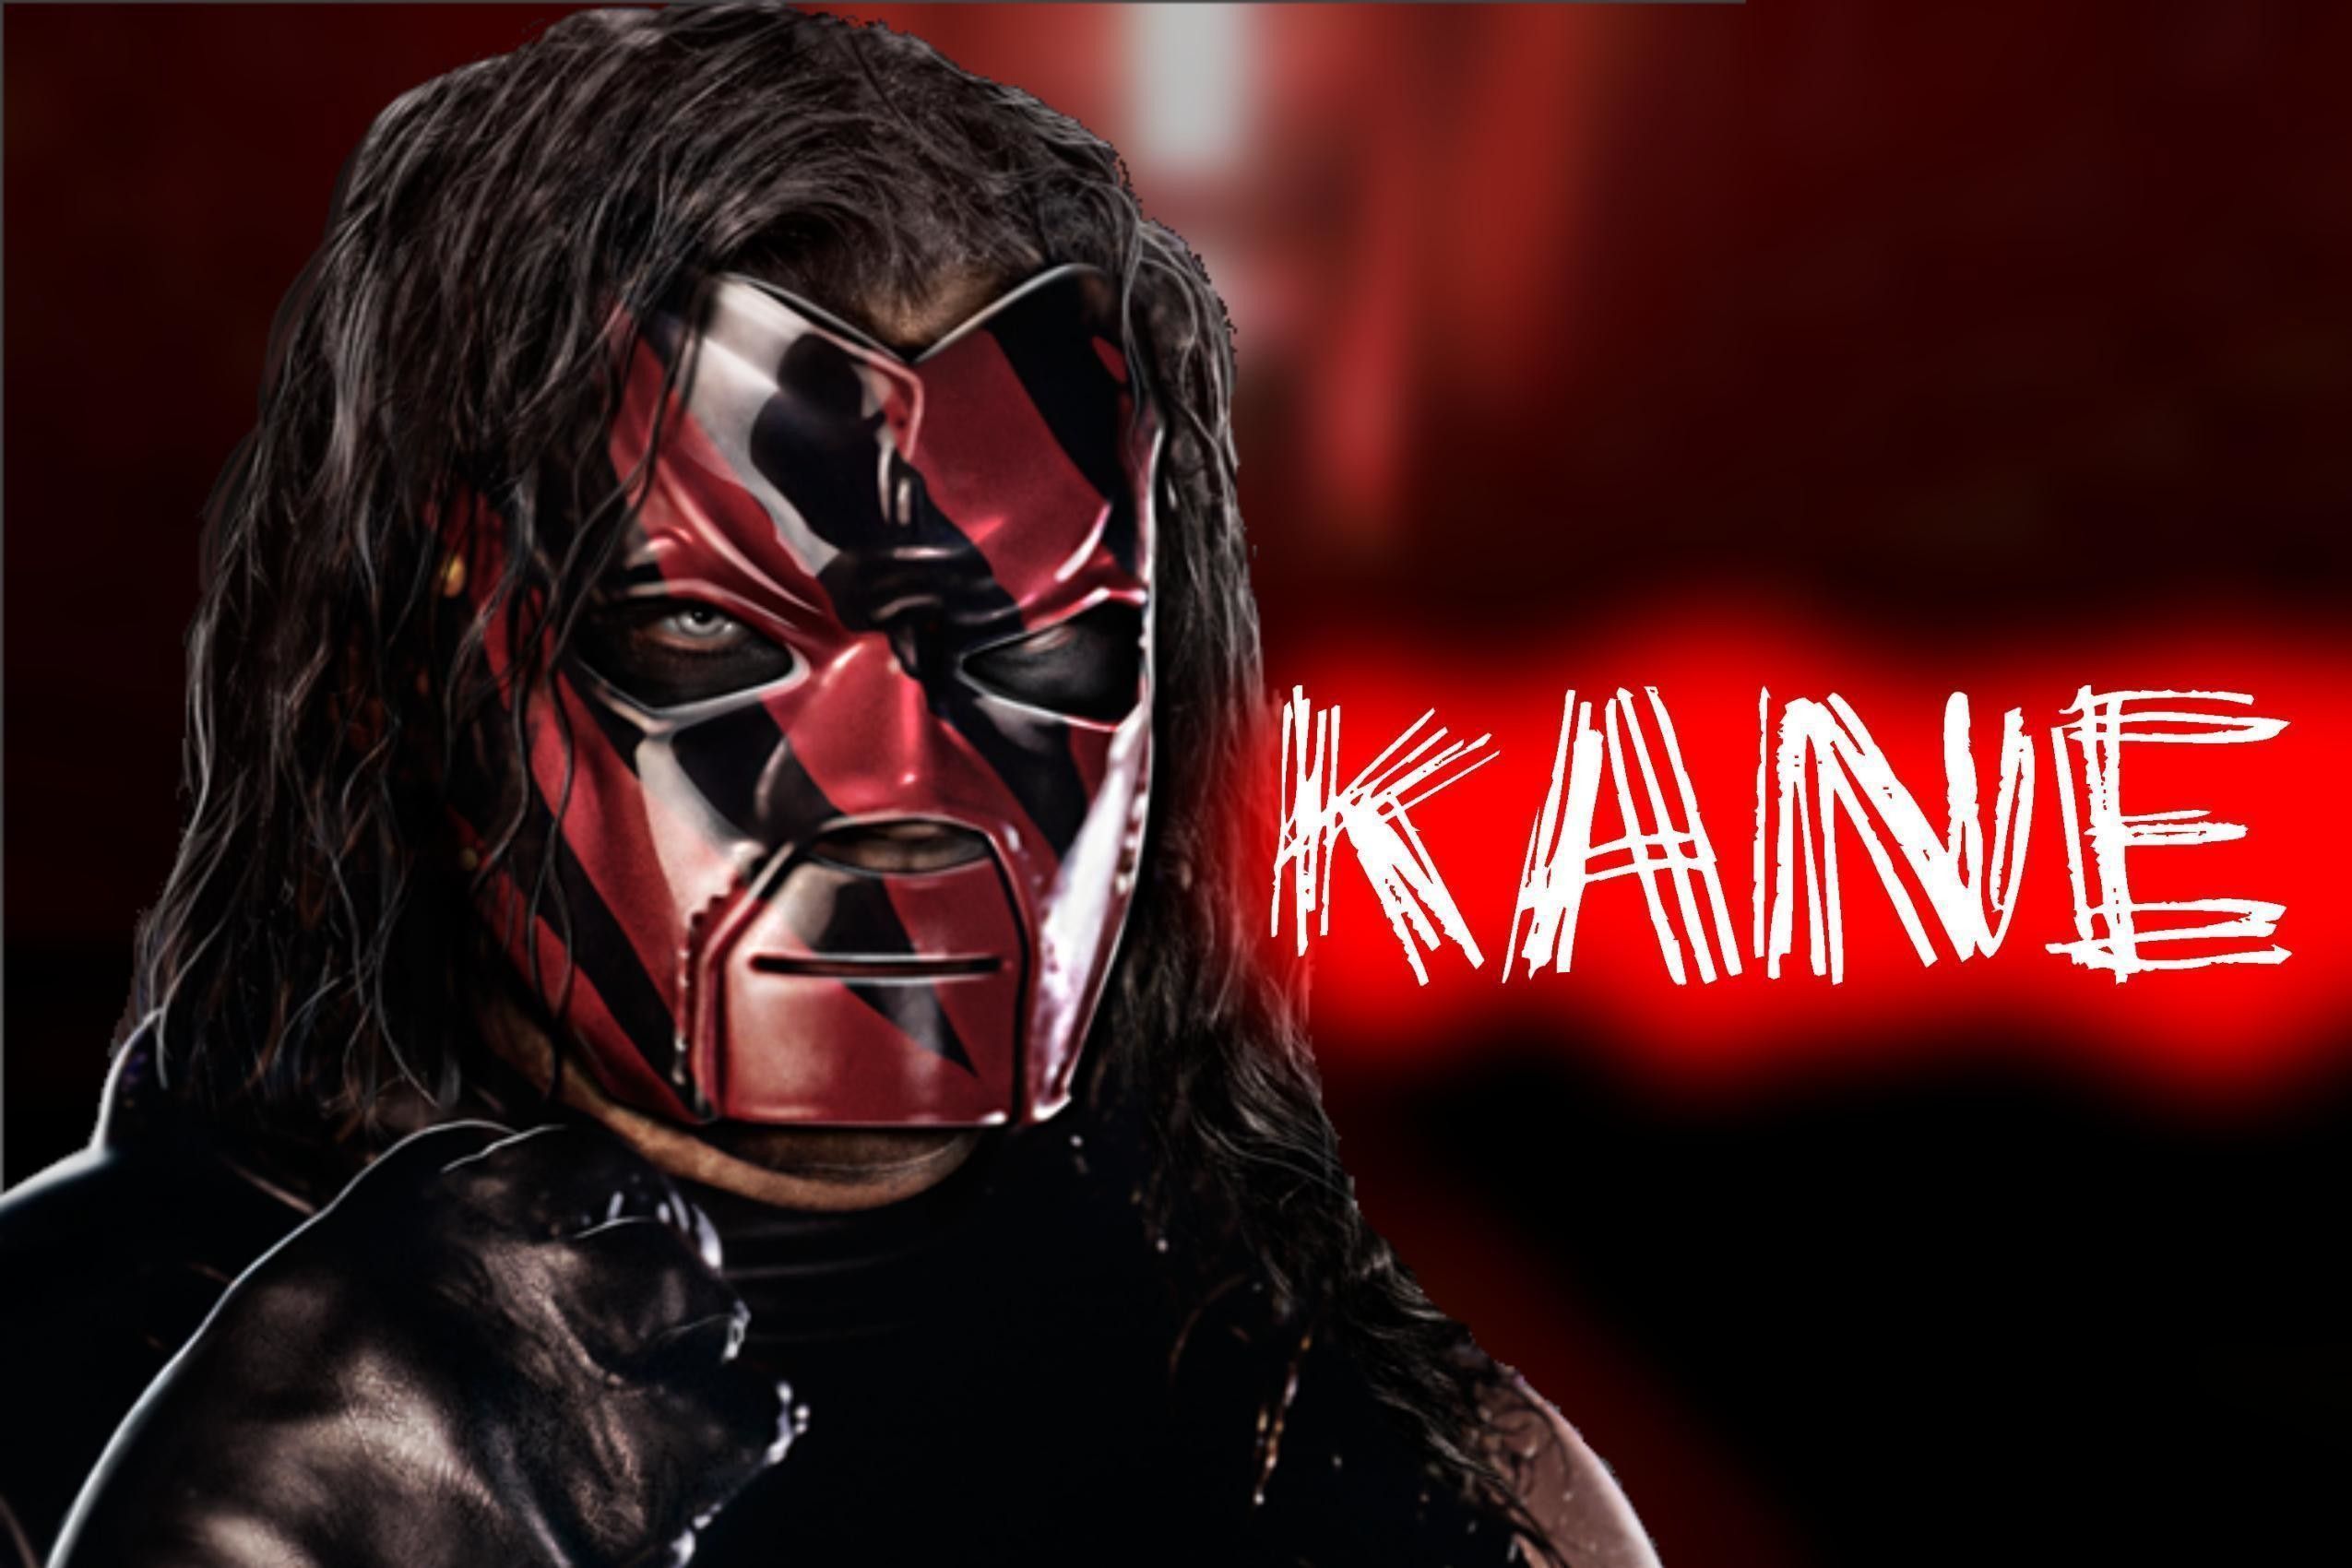 Kane Wallpaper Free Kane Background